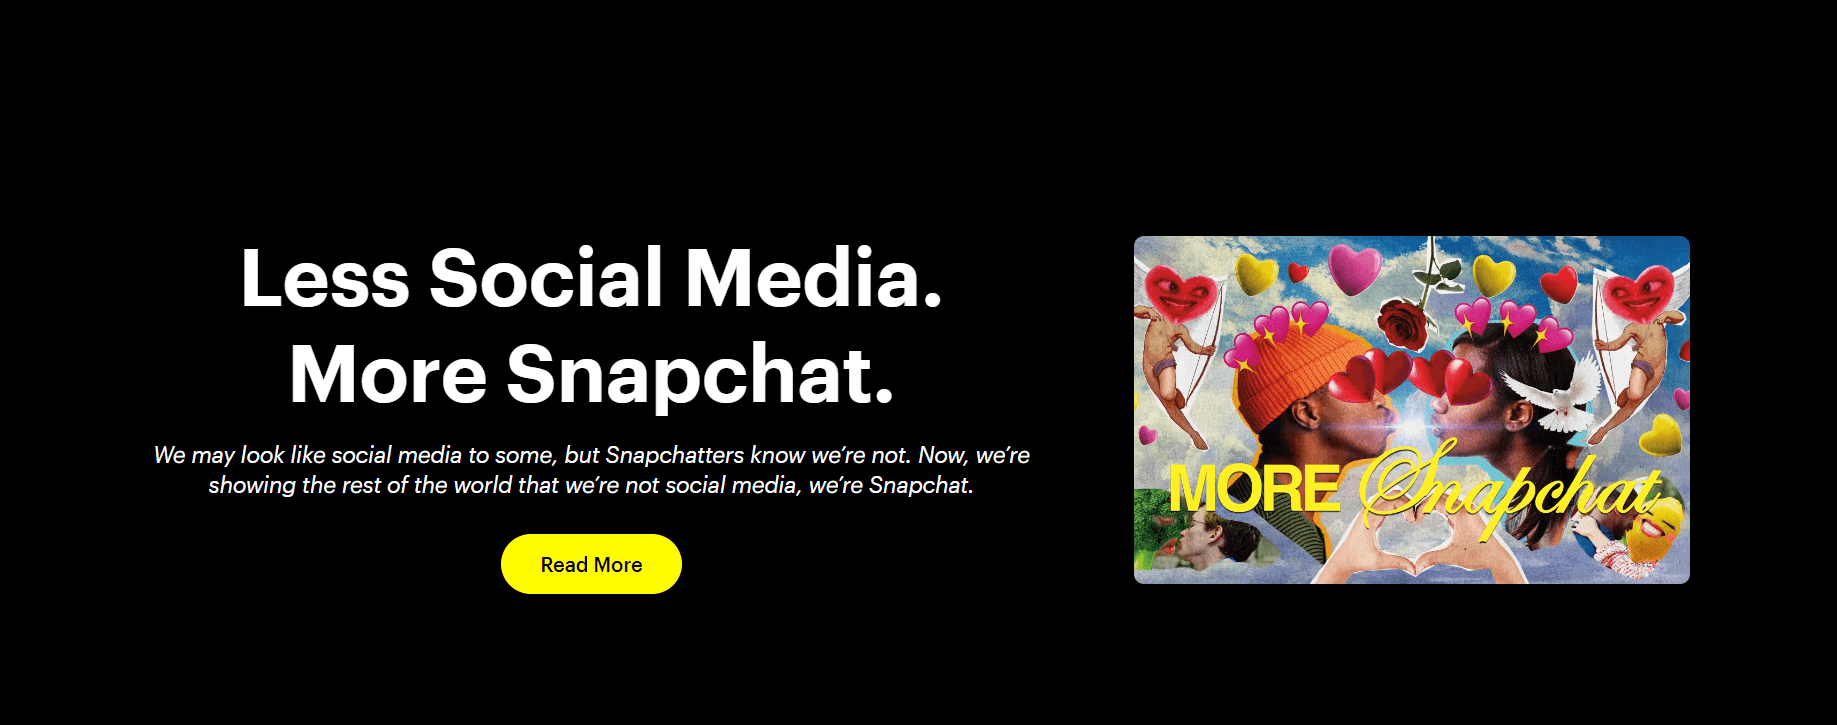 snapchat 360 marketing strategy